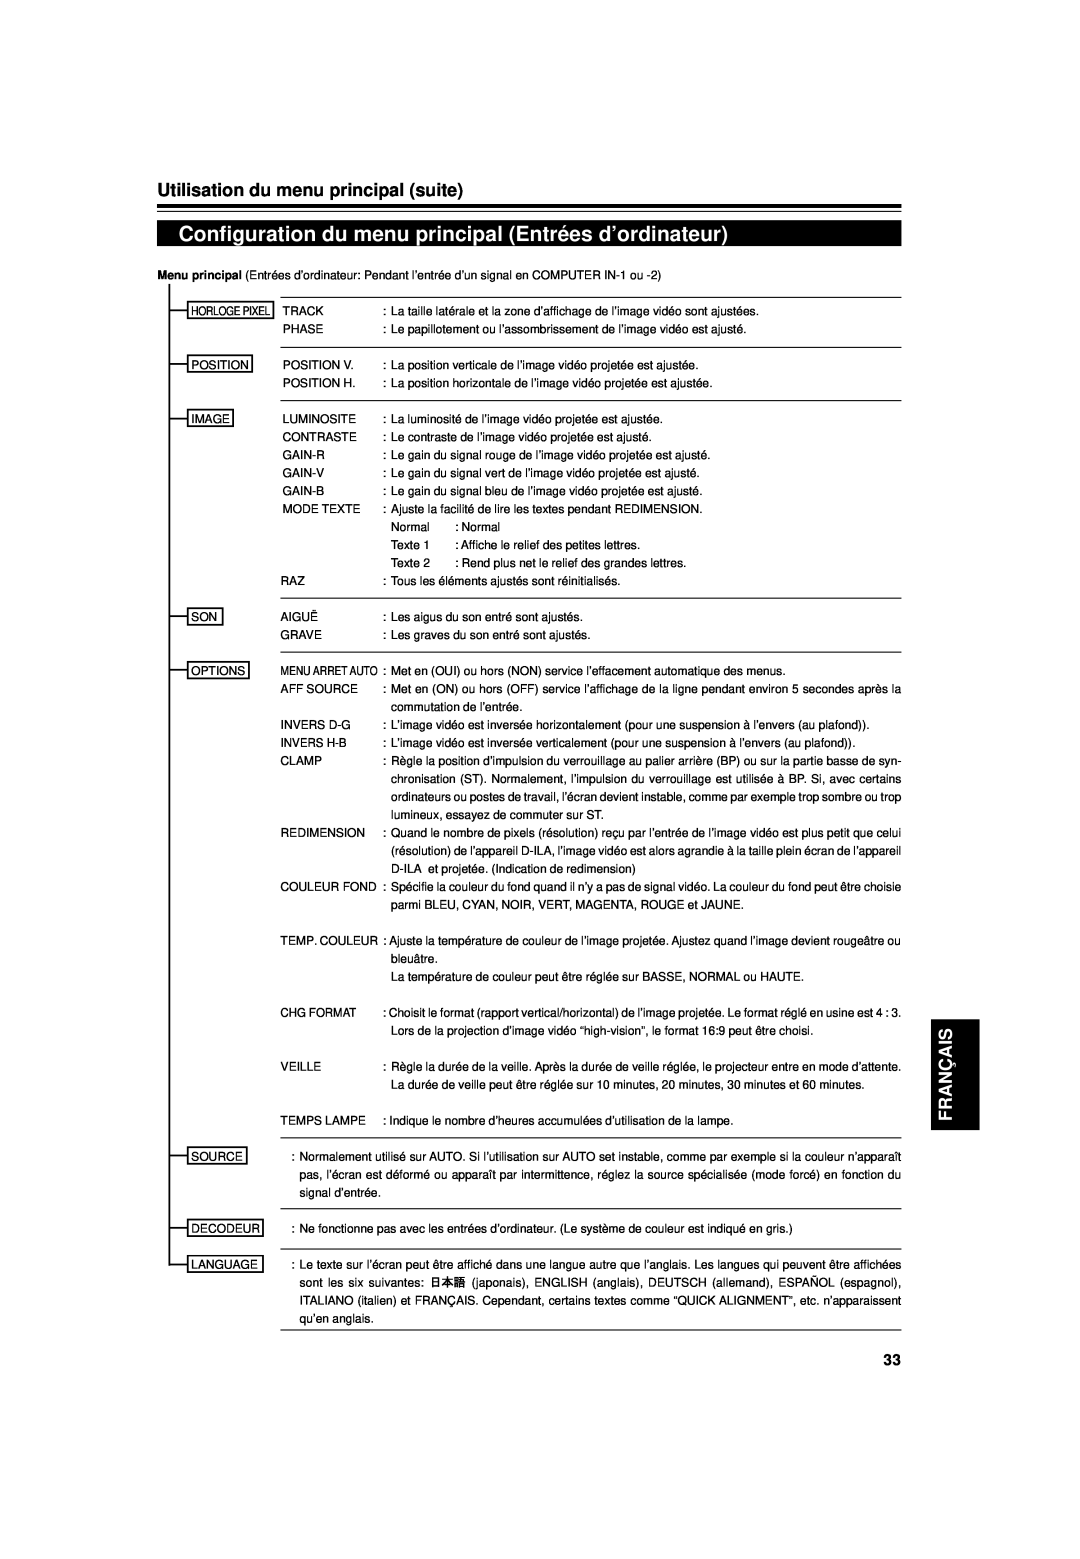 JVC DLA-G15U manual Configuration du menu principal Entrées d’ordinateur, Utilisation du menu principal suite, Français 